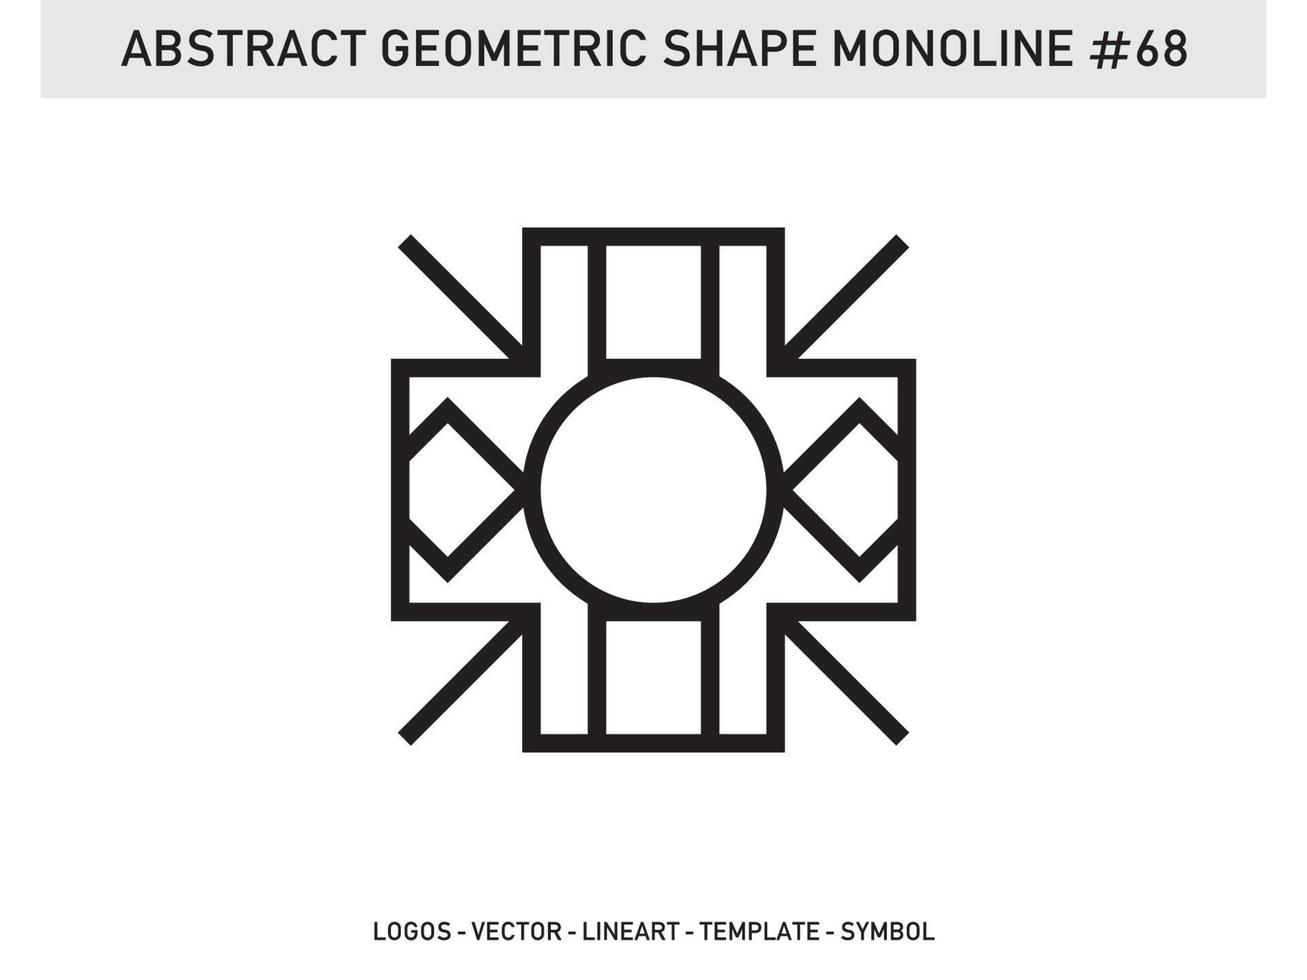 vettore libero di forma di linea lineart monolinea geometrica astratta